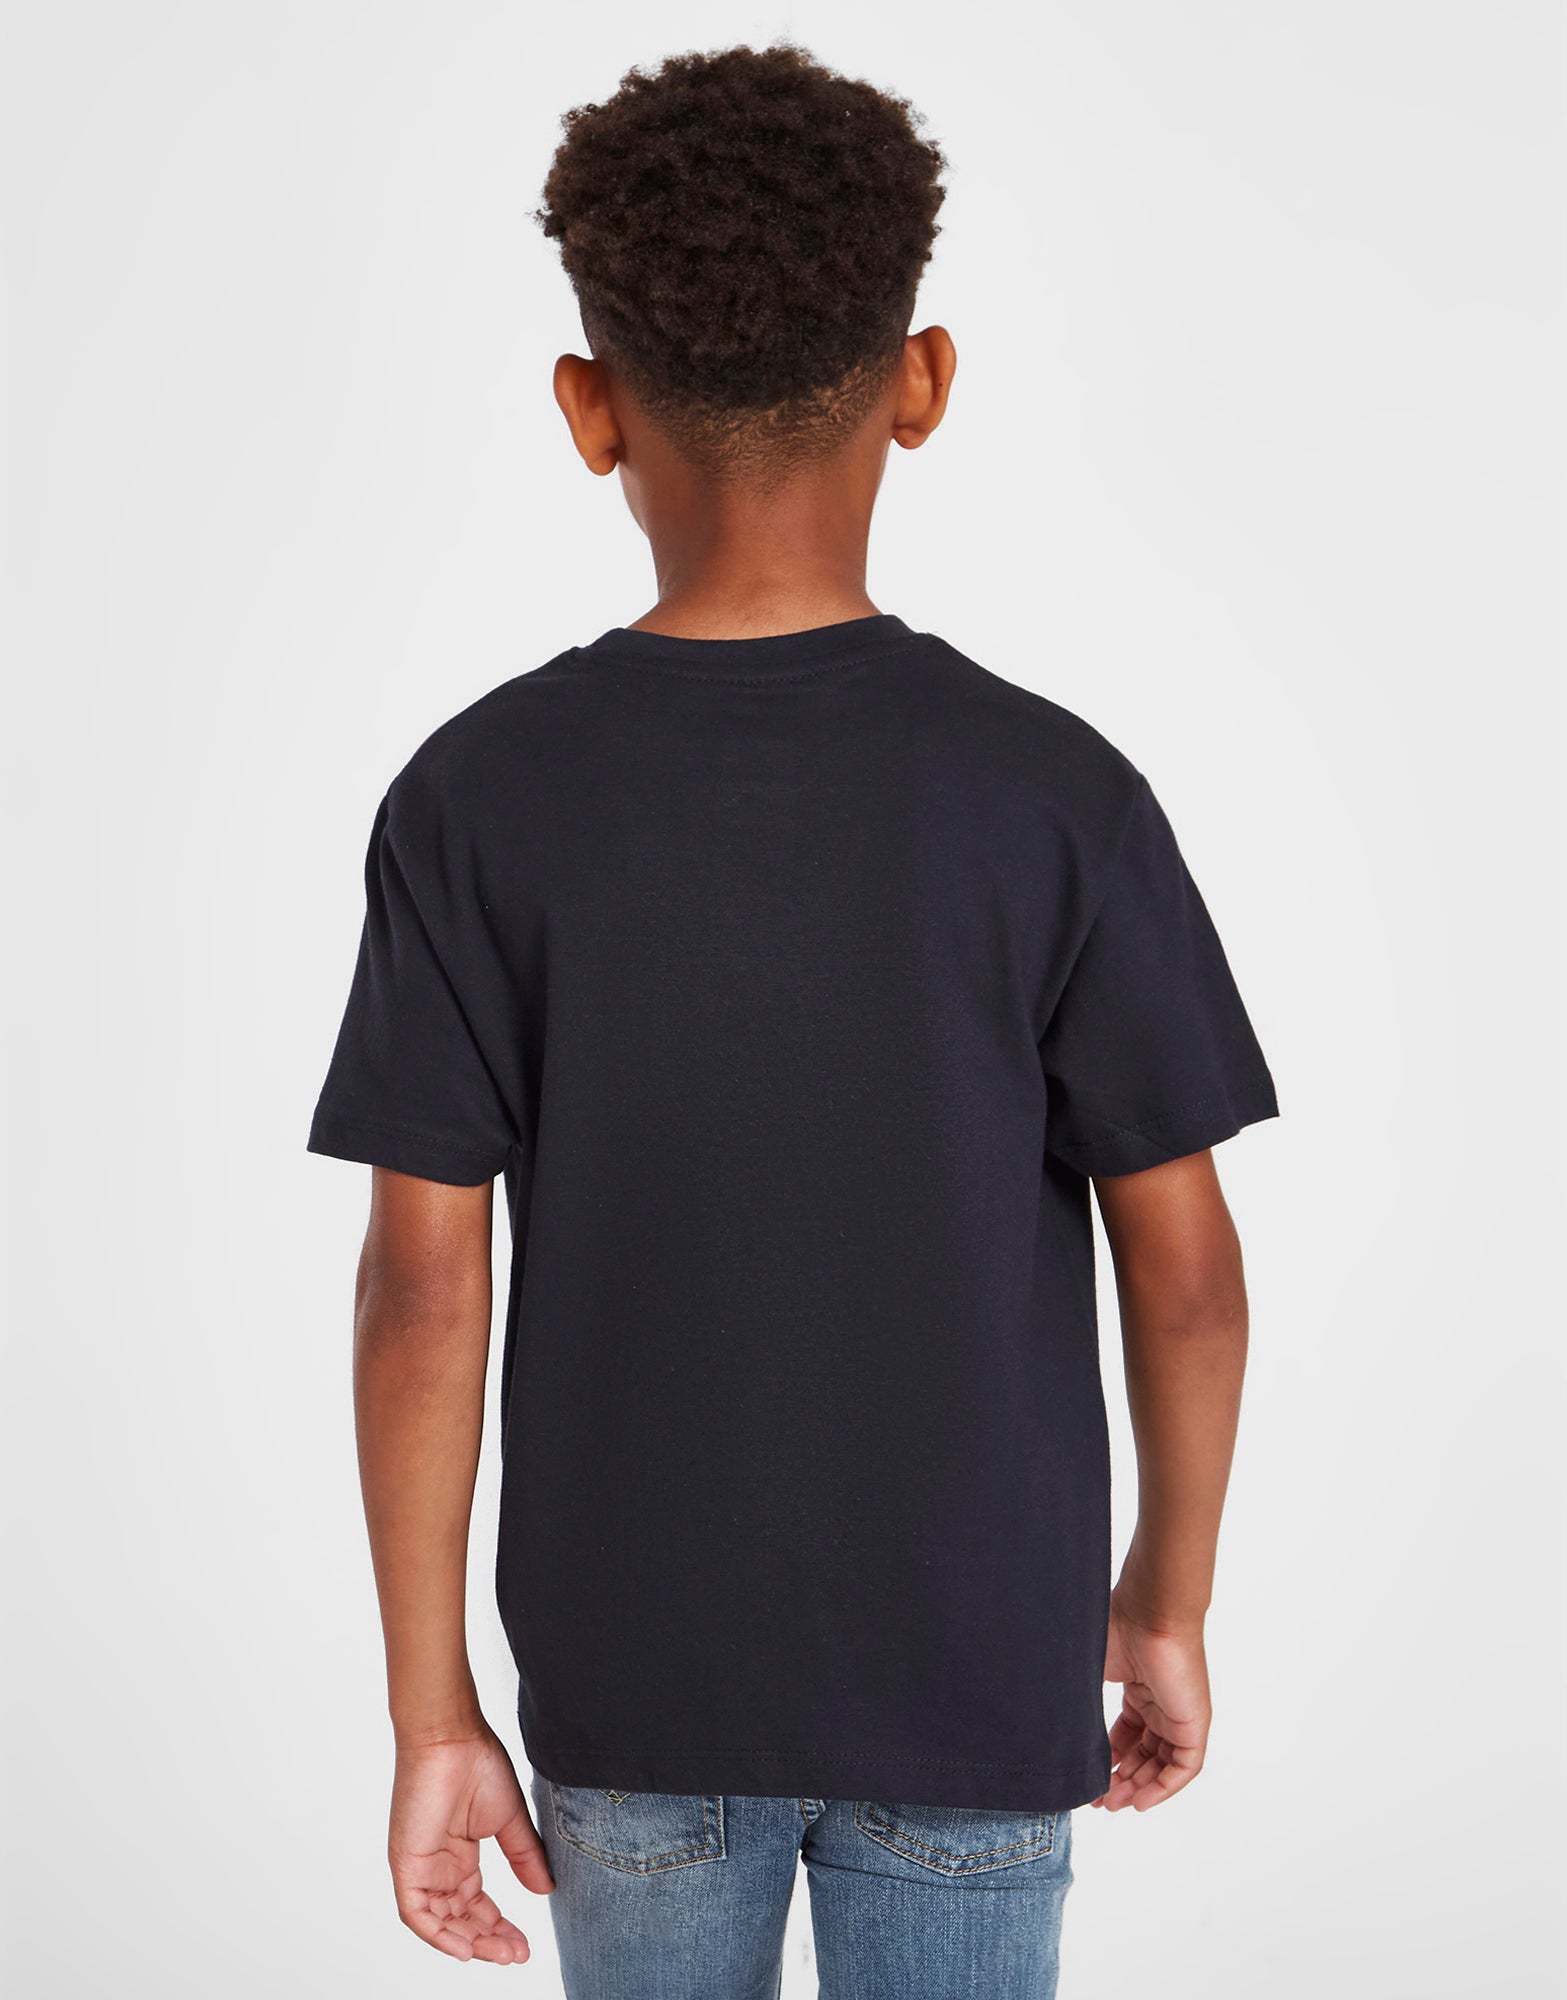 Official Team Scotland Kids T-Shirt - Navy - The World Football Store